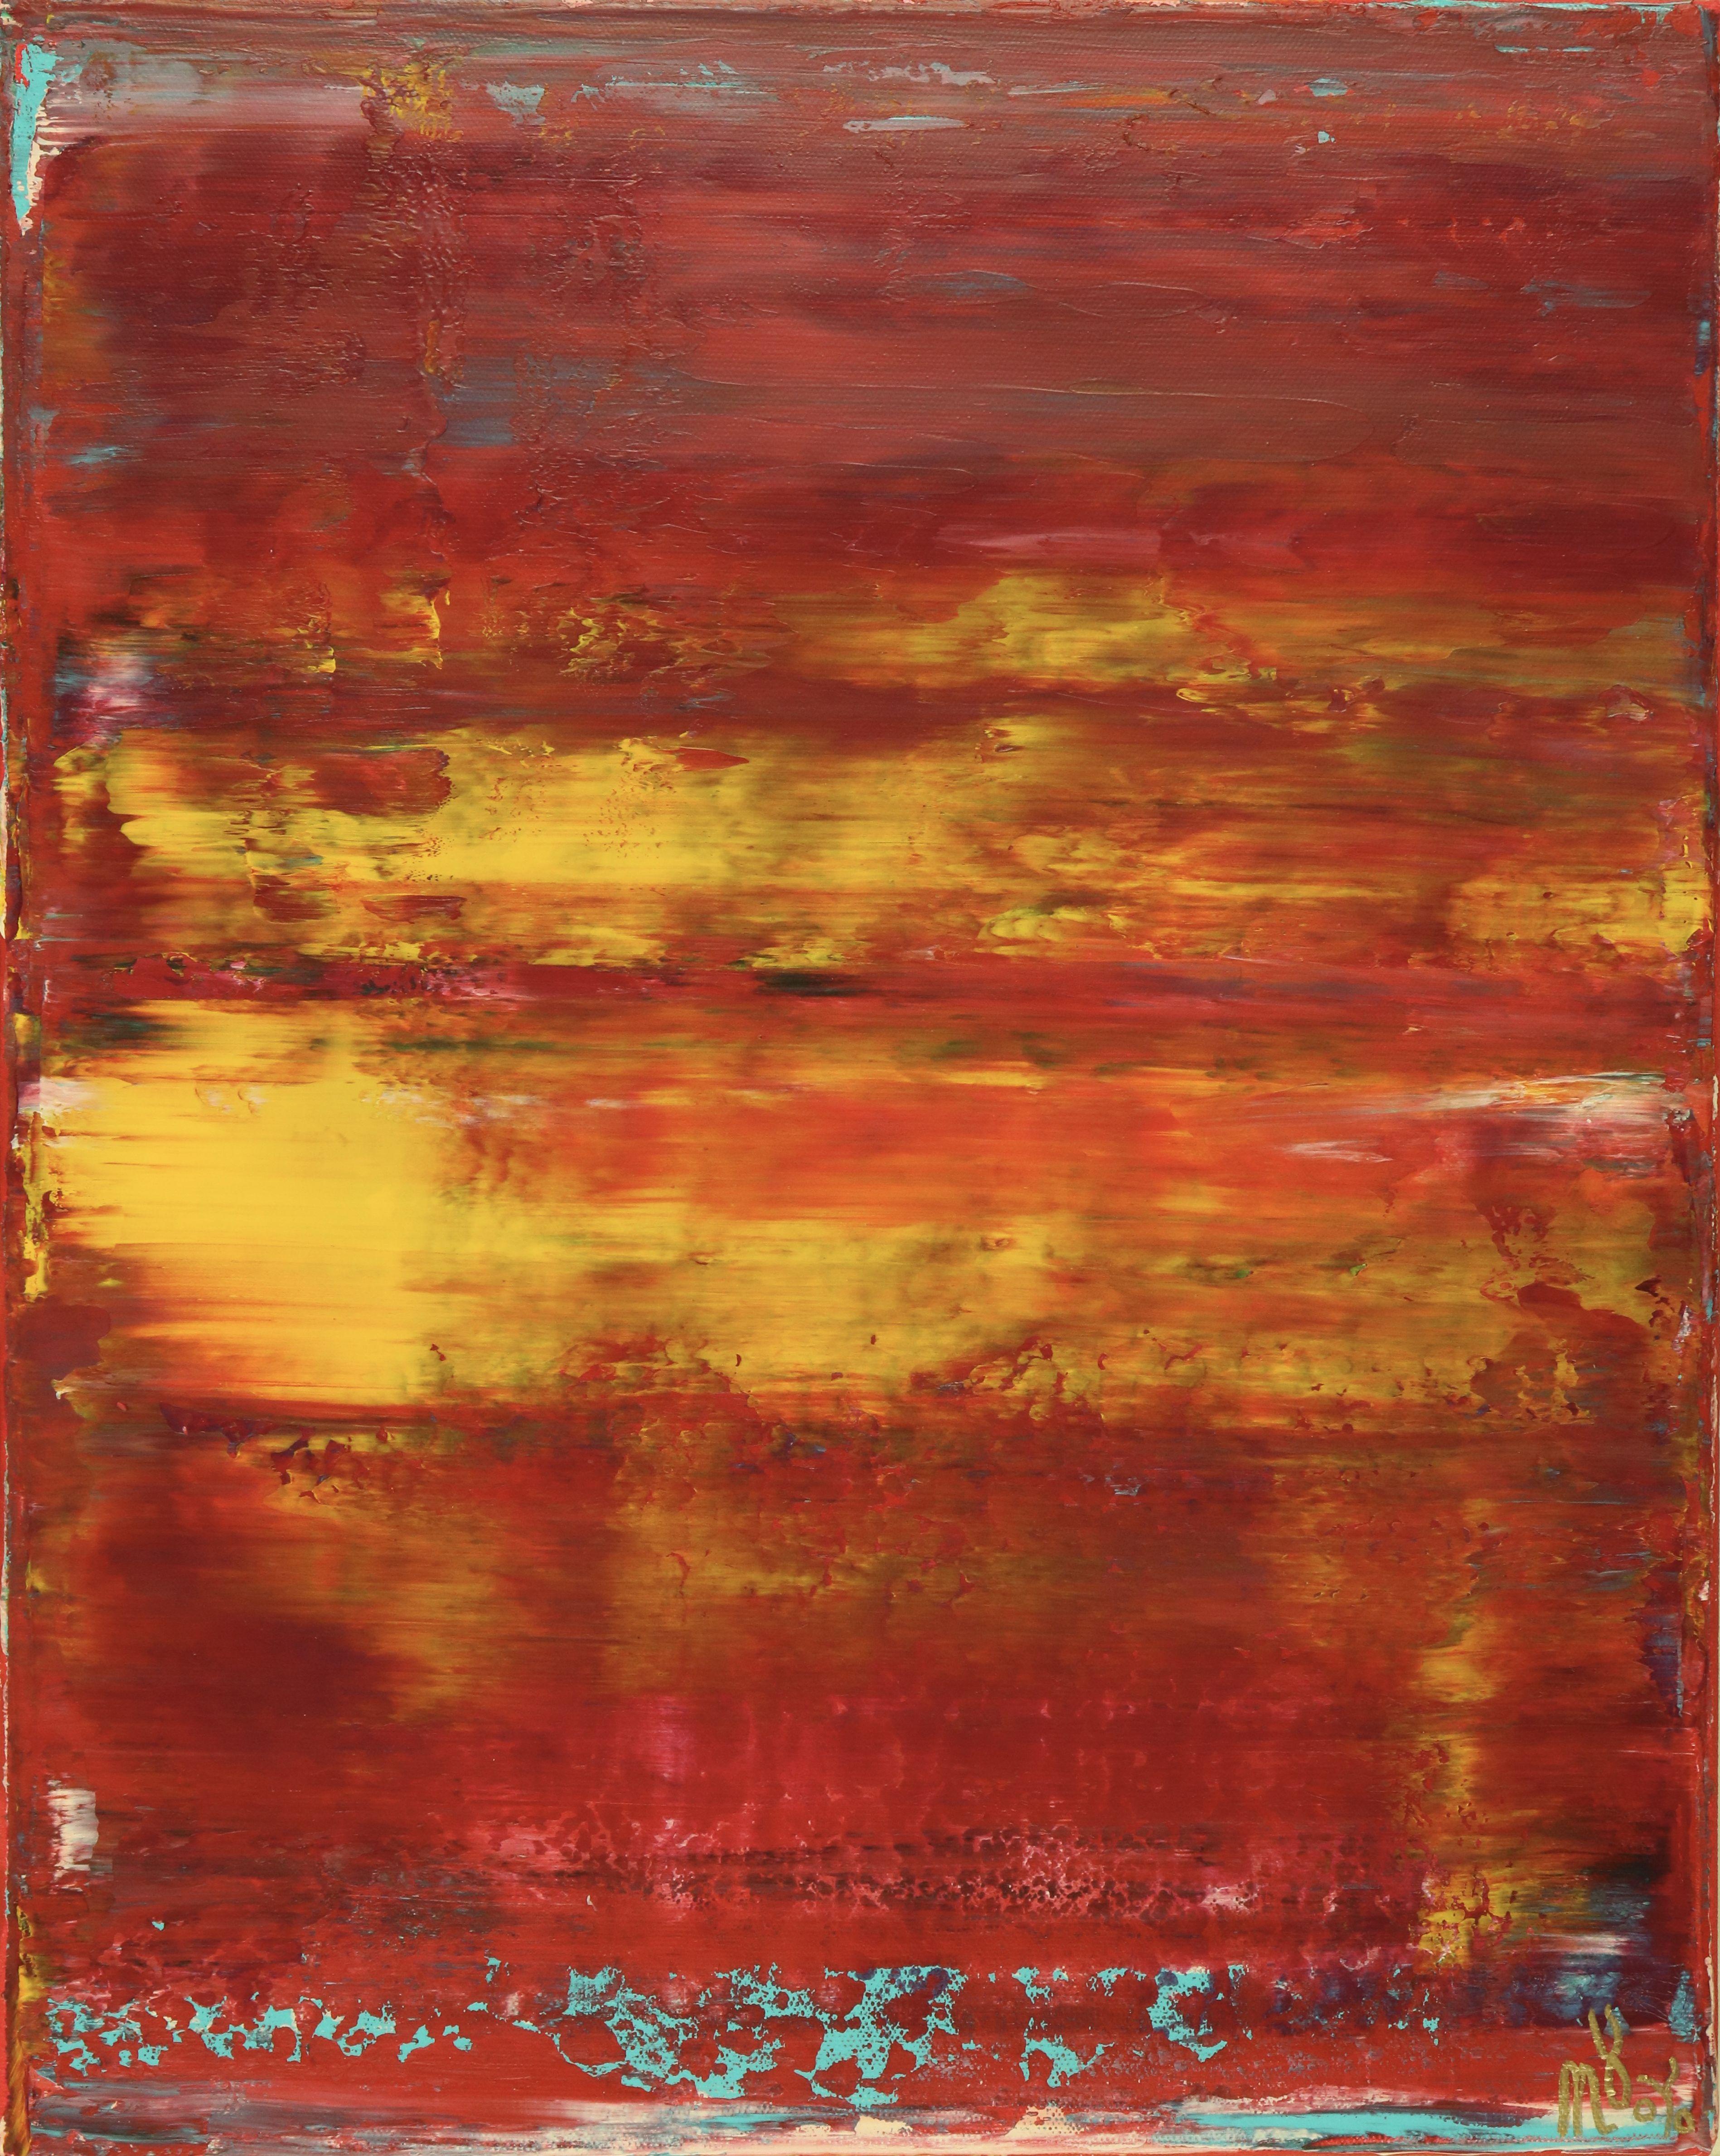 Rojo infinito (Fiery spectra) 2, Mixed Media on Canvas - Mixed Media Art by Nestor Toro